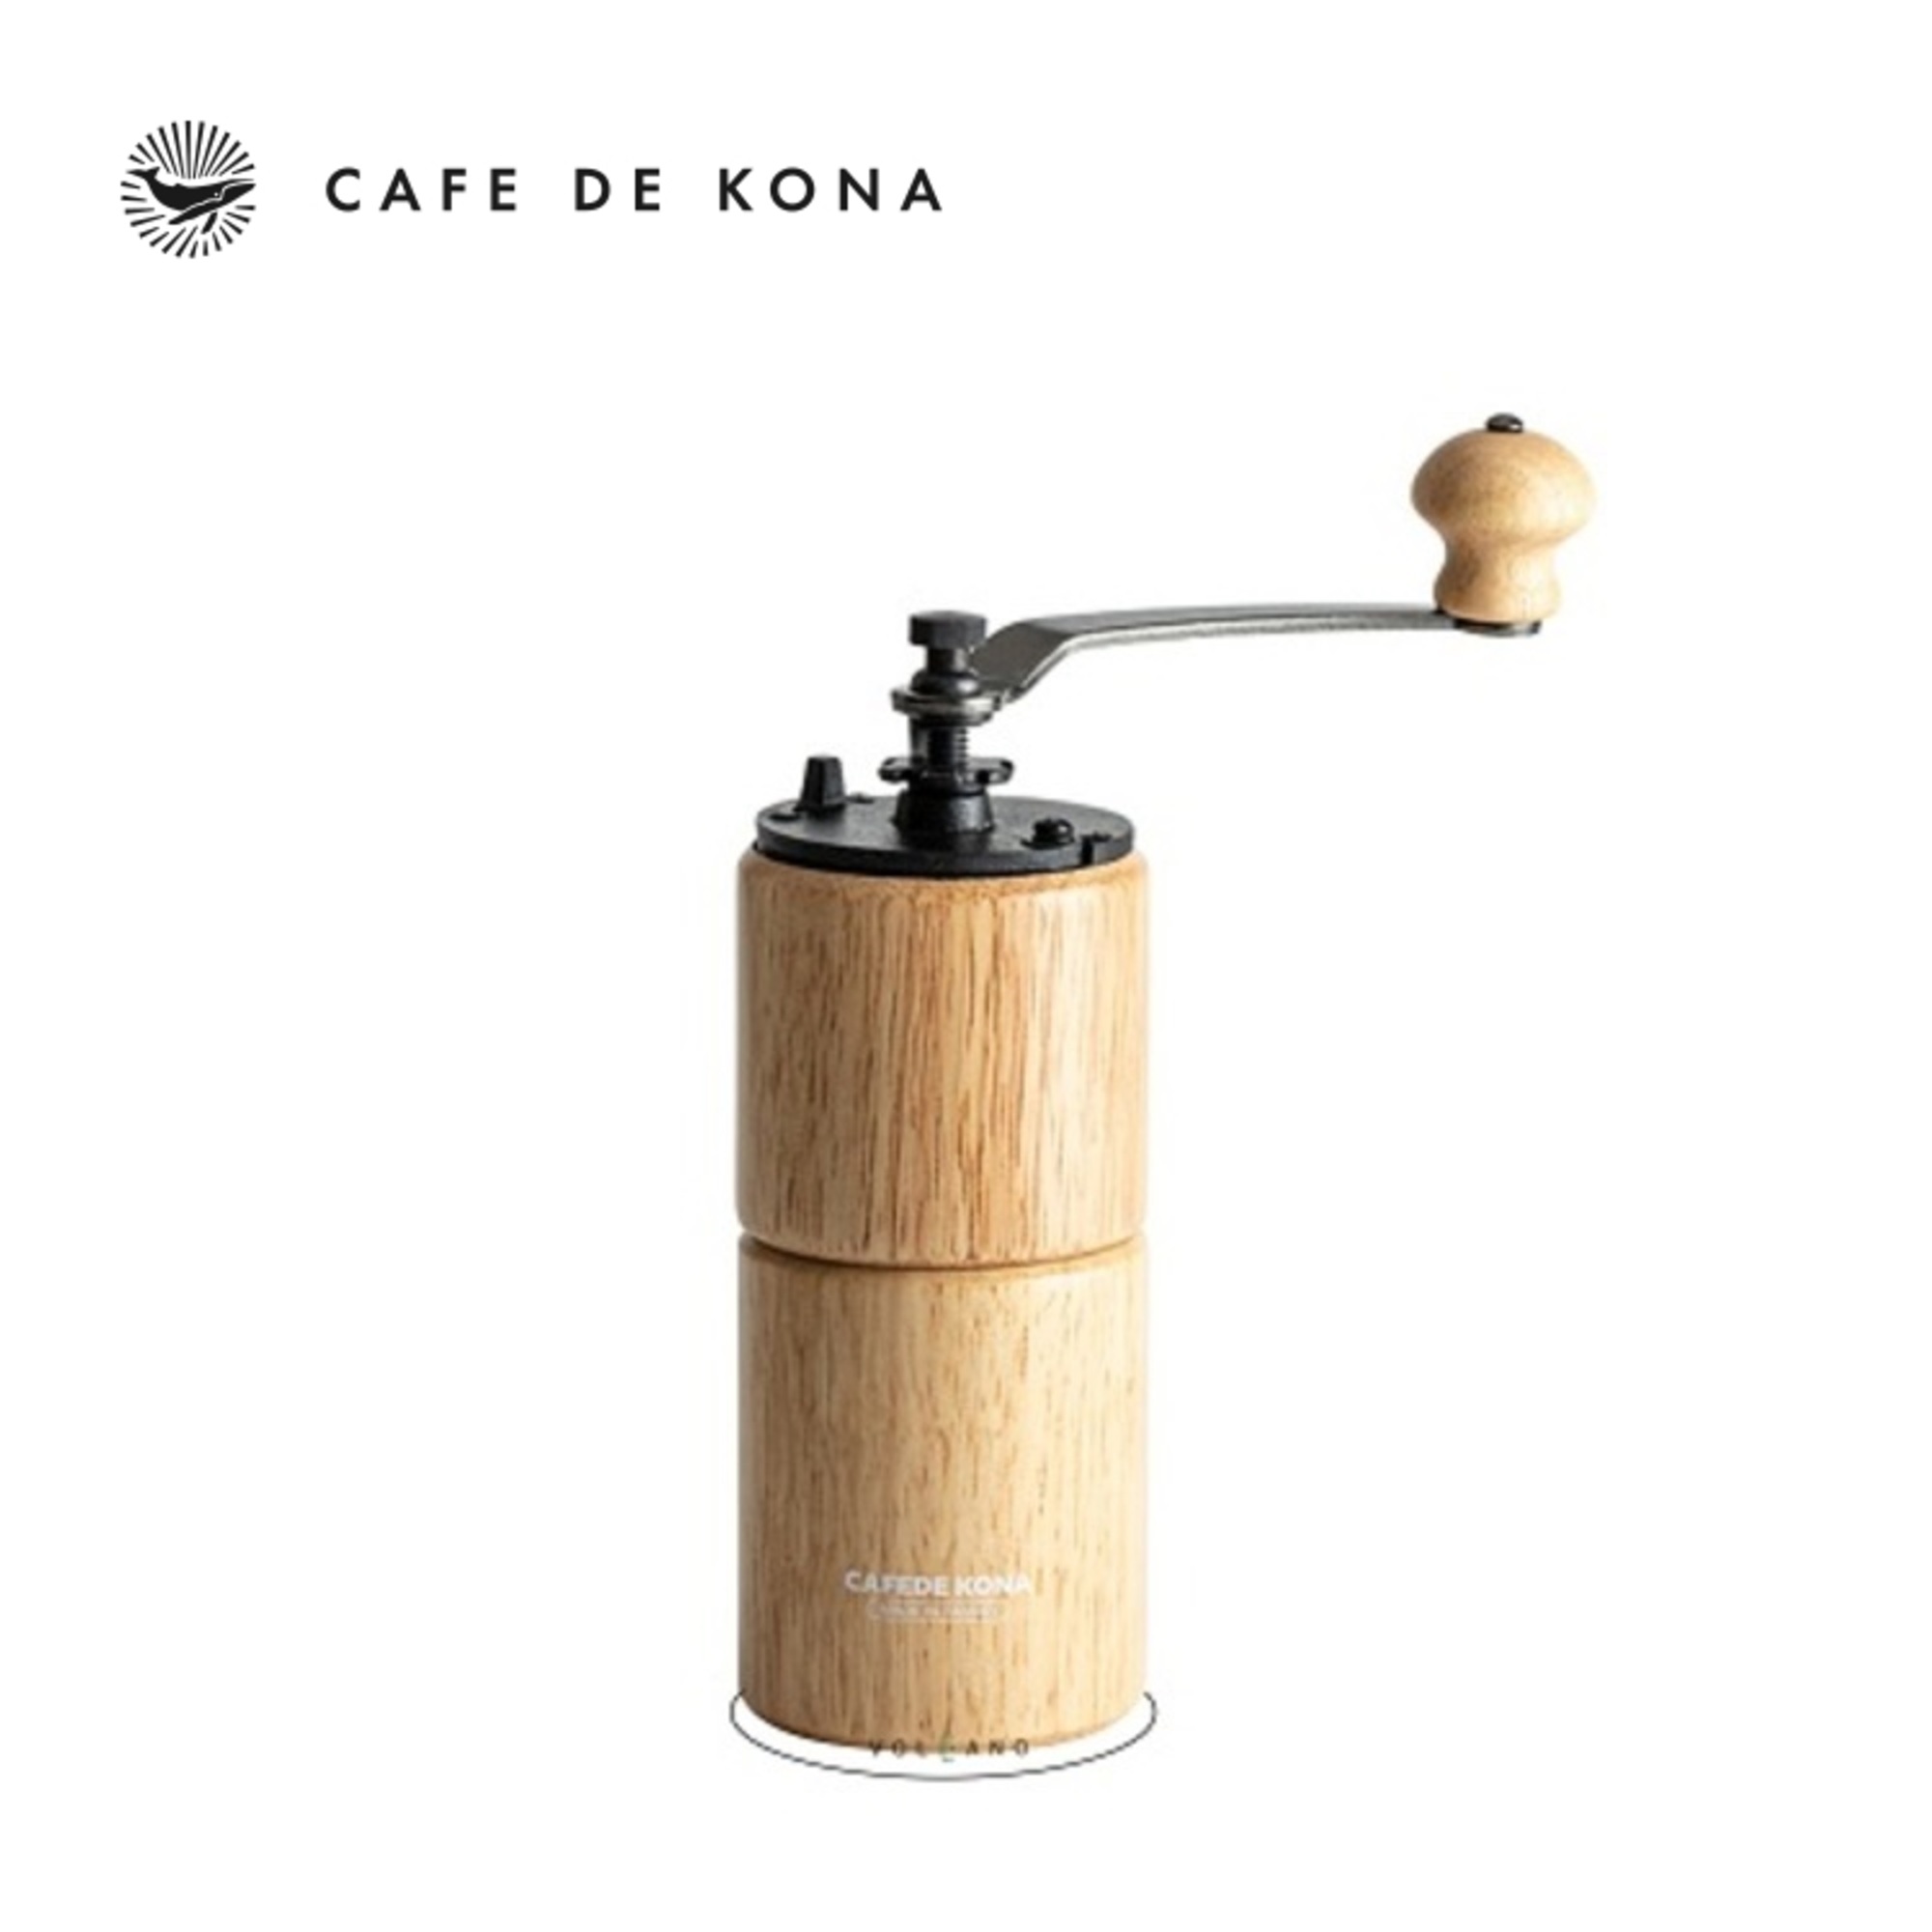 Cối xay cà phê thân gỗ hình trụ tròn lõi thép CAFE DE KONA